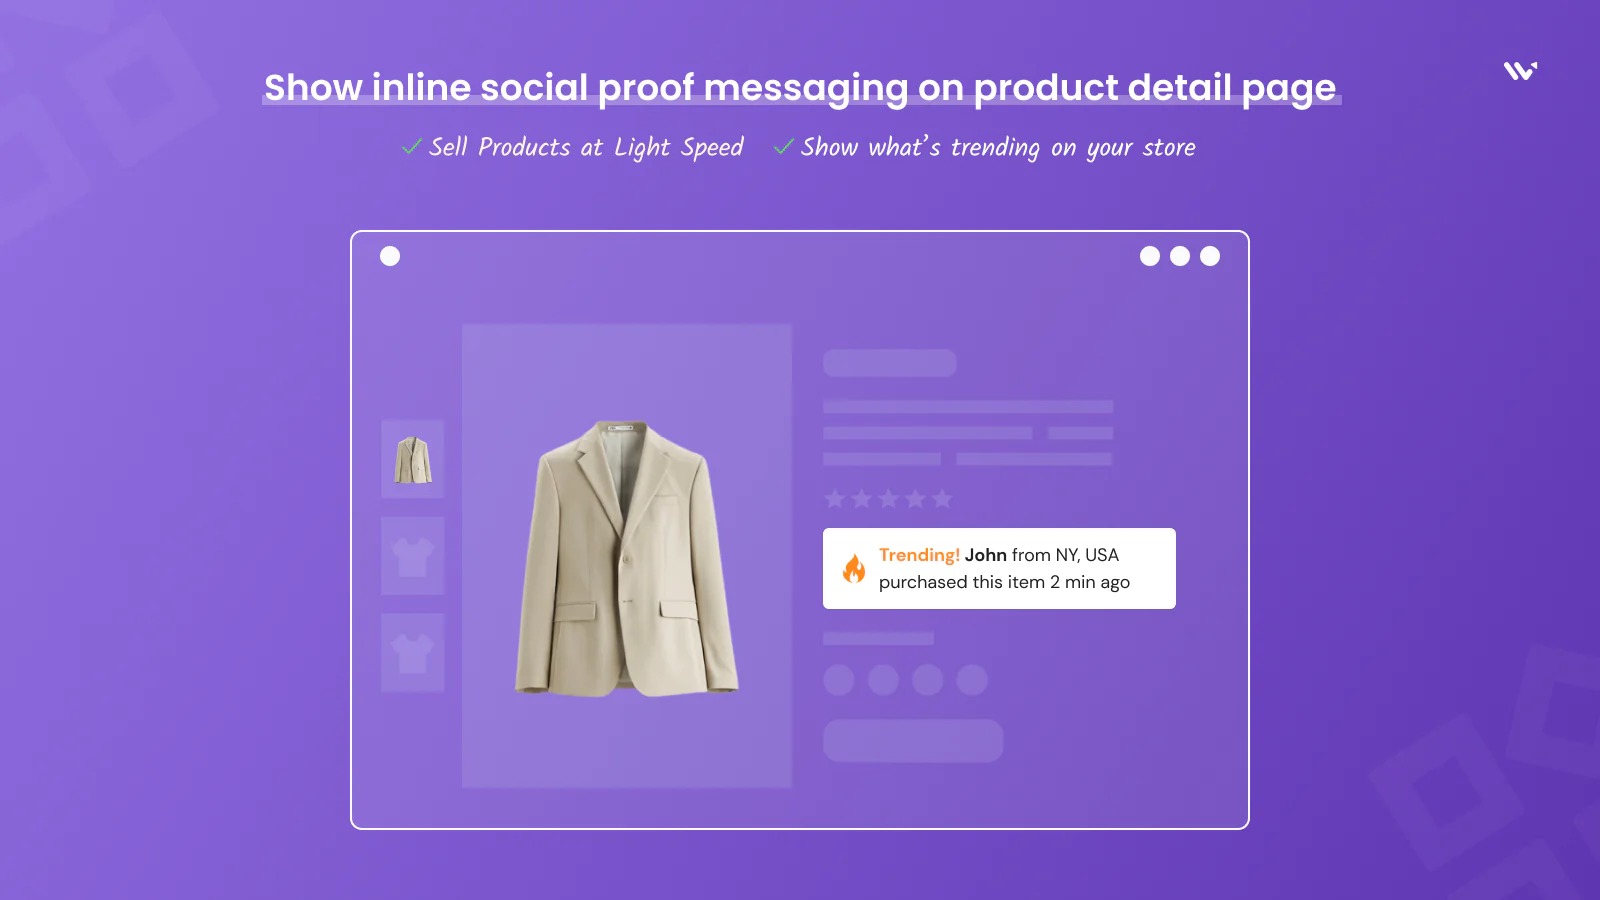 Mostrar mensagens de prova social inline na página do catálogo de produtos